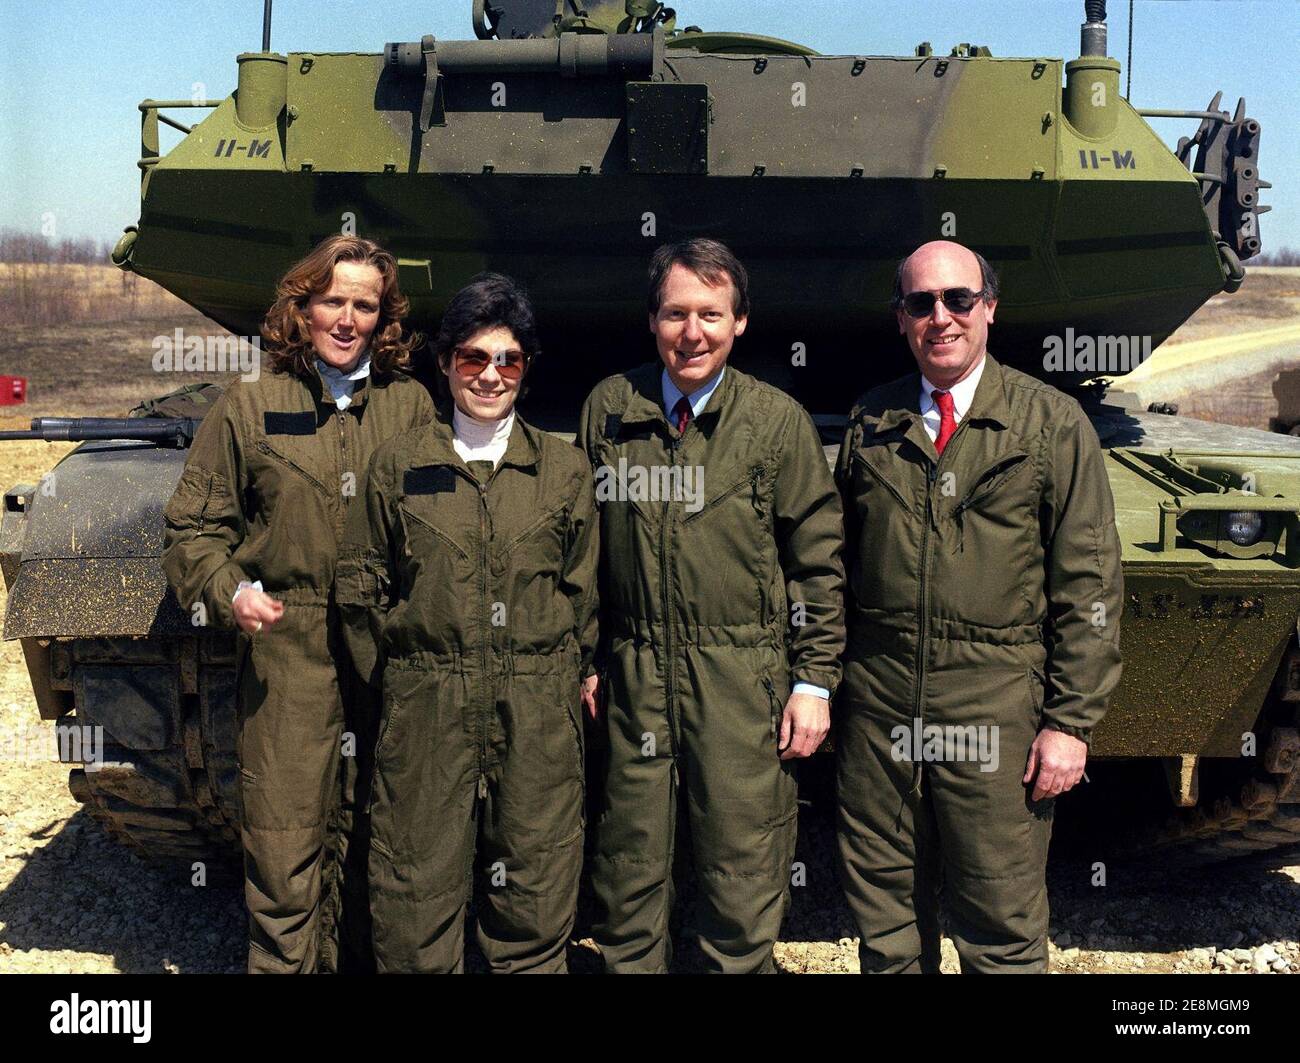 Mitch McConnell et des membres de son personnel se réunissent pour une photographie près d'un char de combat principal M1 Abrams. Banque D'Images